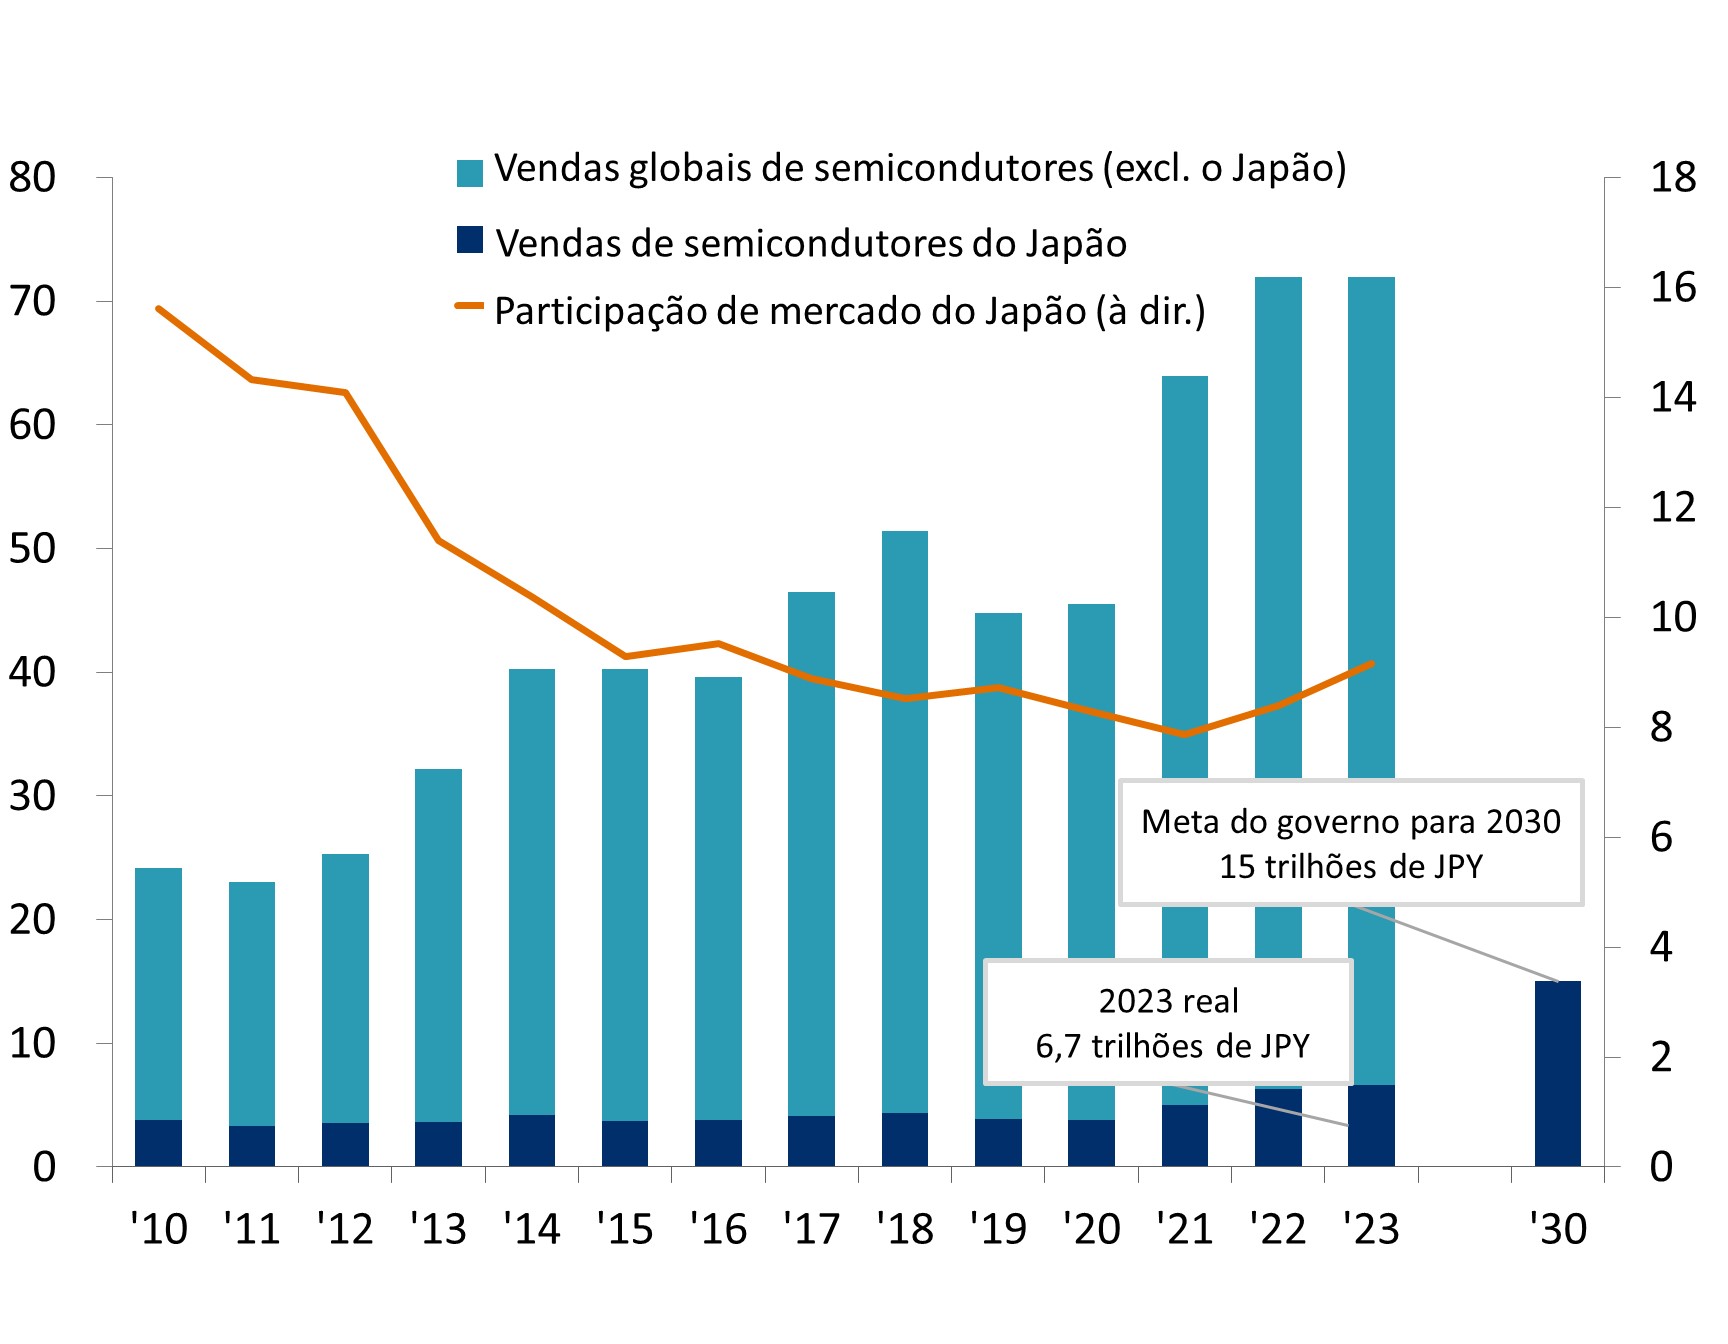 O gráfico de barras representa as vendas globais de semicondutores (excluindo o Japão) e as vendas de semicondutores do Japão de 2010 a 2023 (como representado pelo eixo esquerdo). O gráfico de barras fornece informações sobre a composição das vendas de semicondutores em nível global e a contribuição do Japão para o mercado global de semicondutores. De 2010 a 2023, as vendas globais de semicondutores (excluindo o Japão) aumentaram de 20,4 trilhões de JPY para 66 trilhões de JPY.  Da mesma forma, as vendas de semicondutores do Japão subiram de 3,8 trilhões de JPY para 6,7 trilhões de JPY. No entanto, a participação de mercado do Japão nas vendas globais de semicondutores tem apresentado uma tendência de queda, caindo de 15,6% em 2010 para 7,9% em 2021. De 2021 a 2023, houve um aumento gradual da participação de mercado do Japão, de 7,9% para 9,2%. As vendas de semicondutores no Japão devem aumentar, já que o governo japonês estabeleceu uma meta para as vendas atingirem 15 trilhões de JPY até 2030.